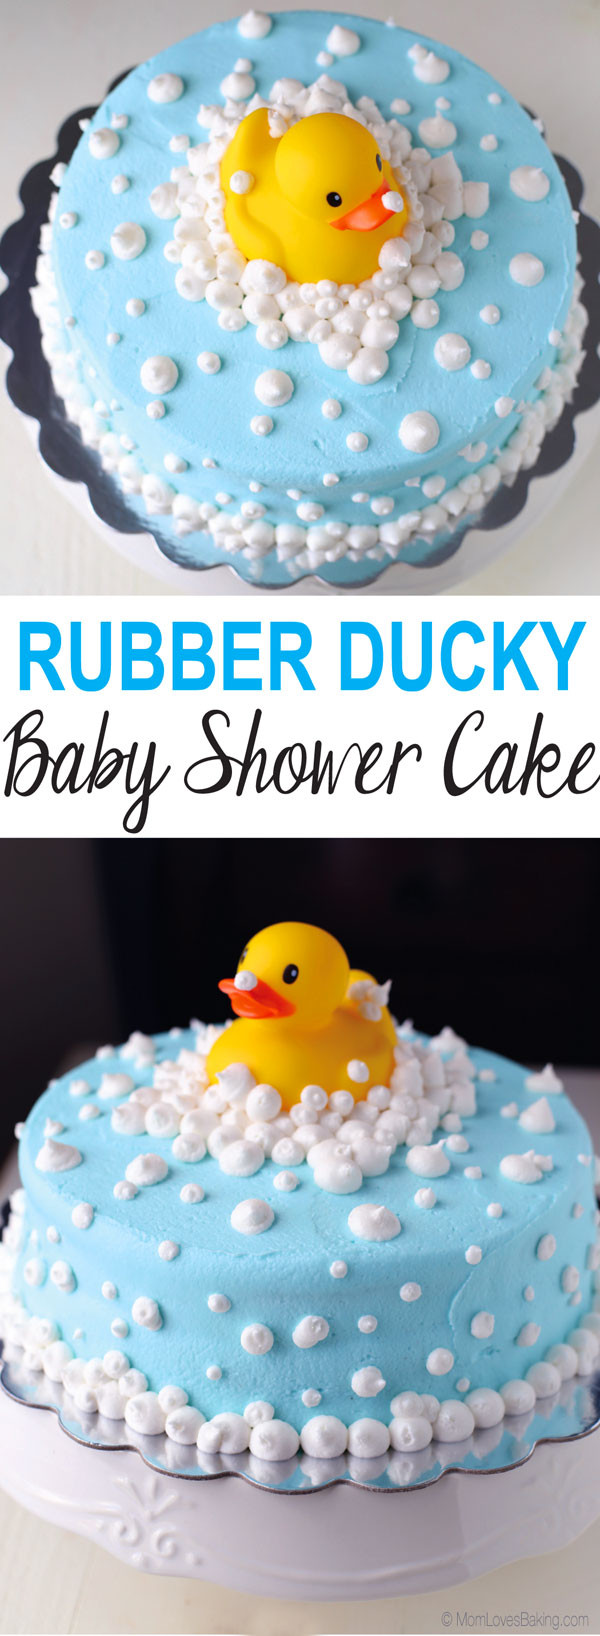 Baby Shower Cake Recipe
 Rubber Ducky Baby Shower Cake Mom Loves Baking